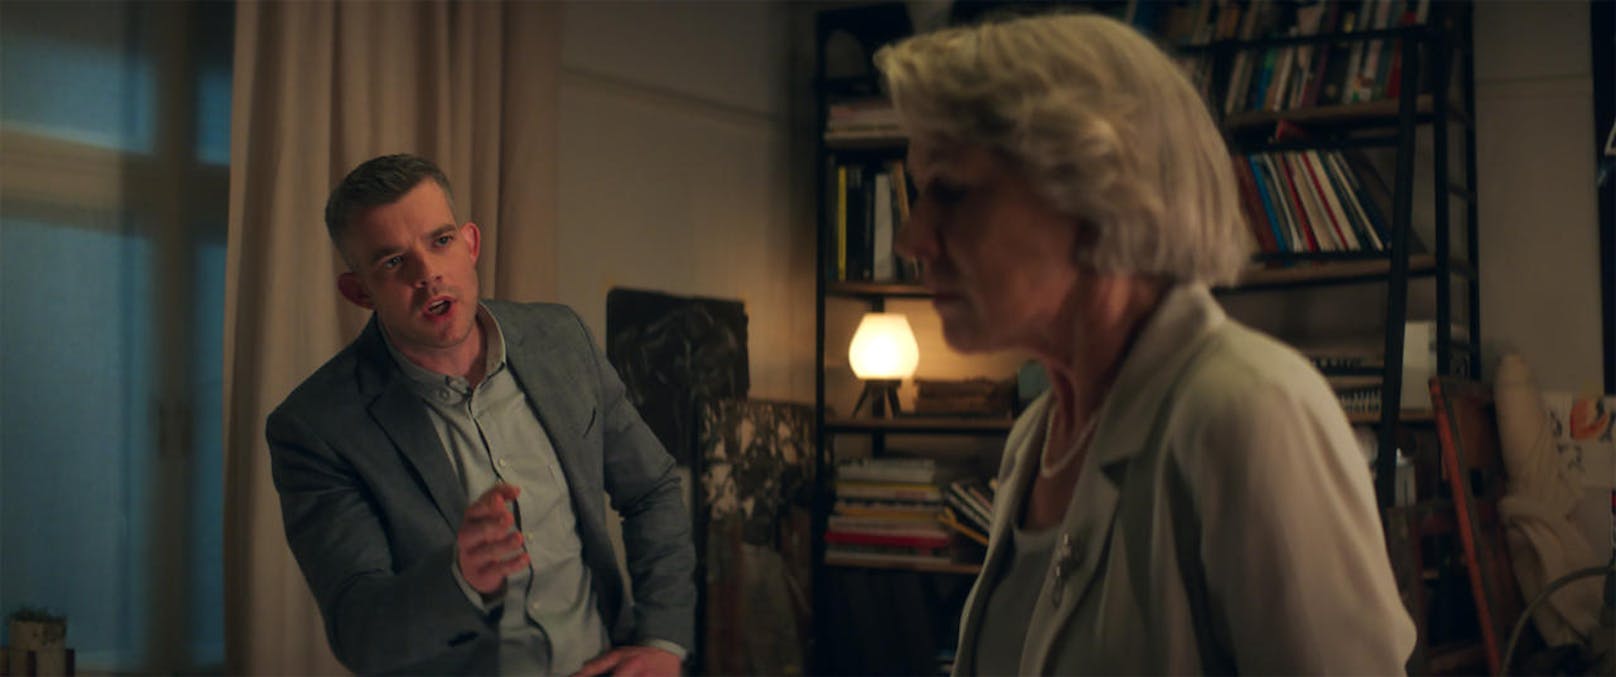 Stephen (Rosssell Tovey) rät seiner Oma (Helen Mirren) vom neuen Mann ab.